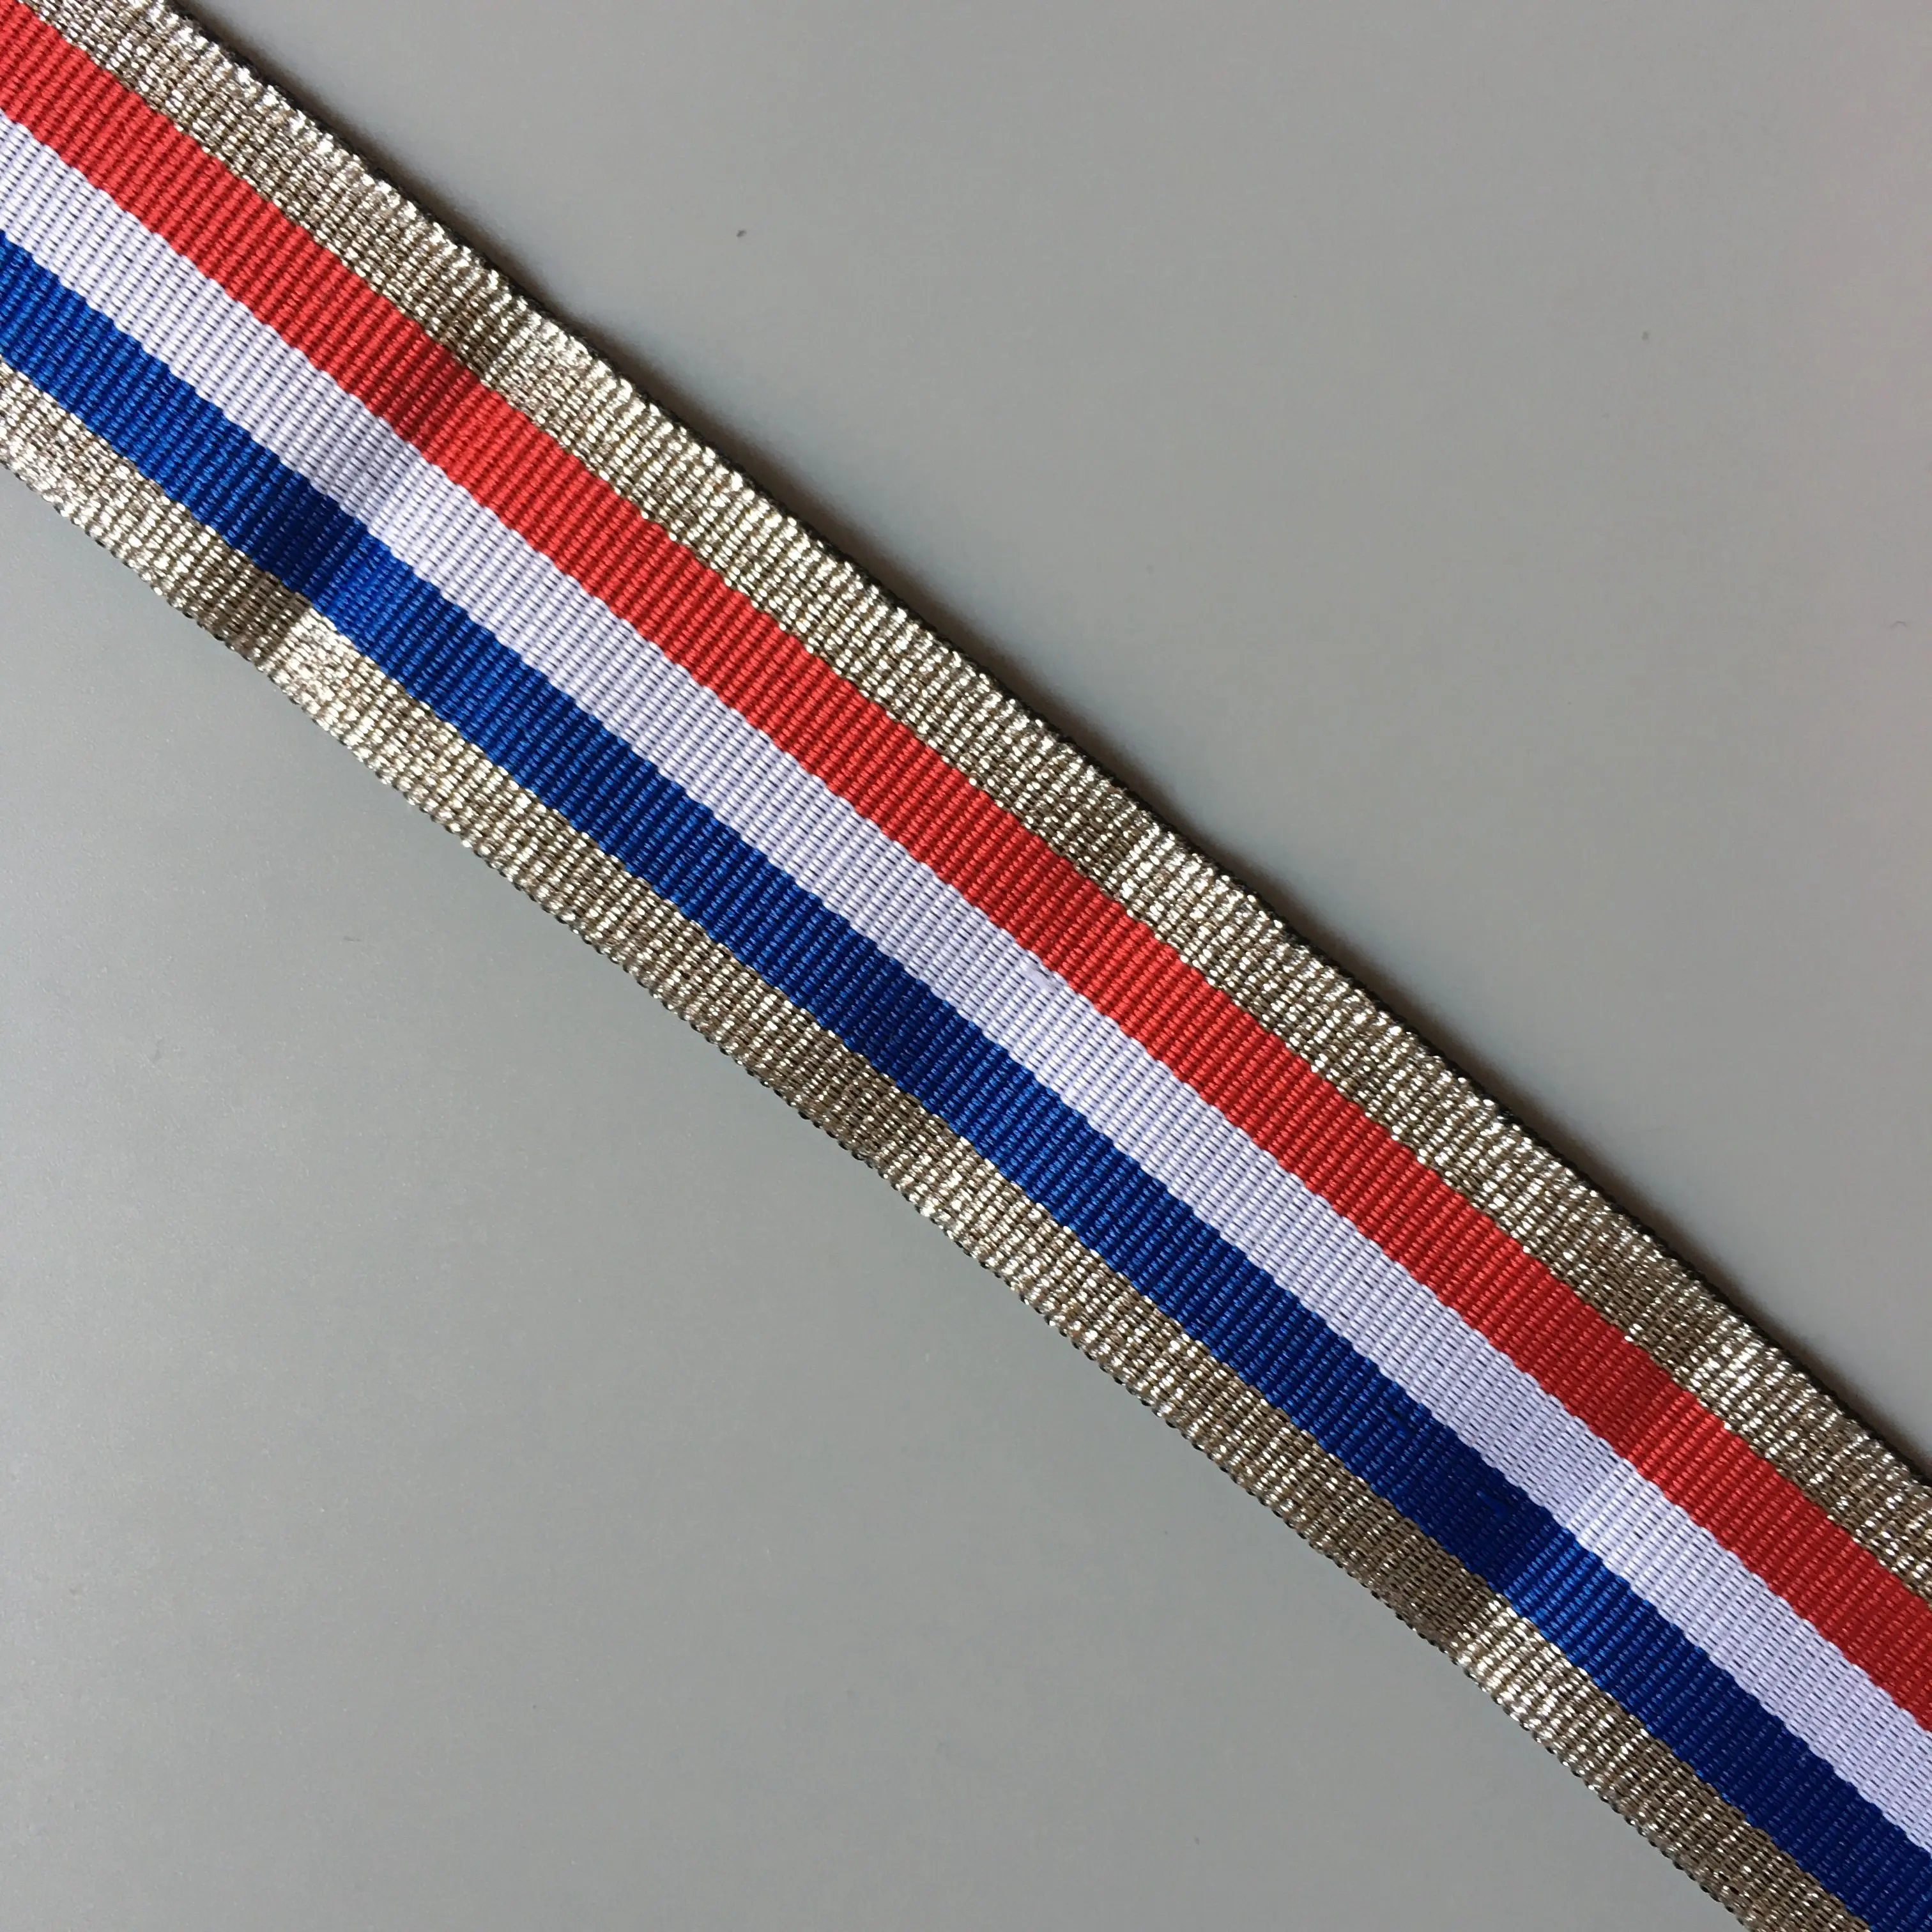 العلم الفرنسي <span class=keywords><strong>الشريط</strong></span> المعدني مع خطوط من الفضة الأبيض الأزرق الأحمر